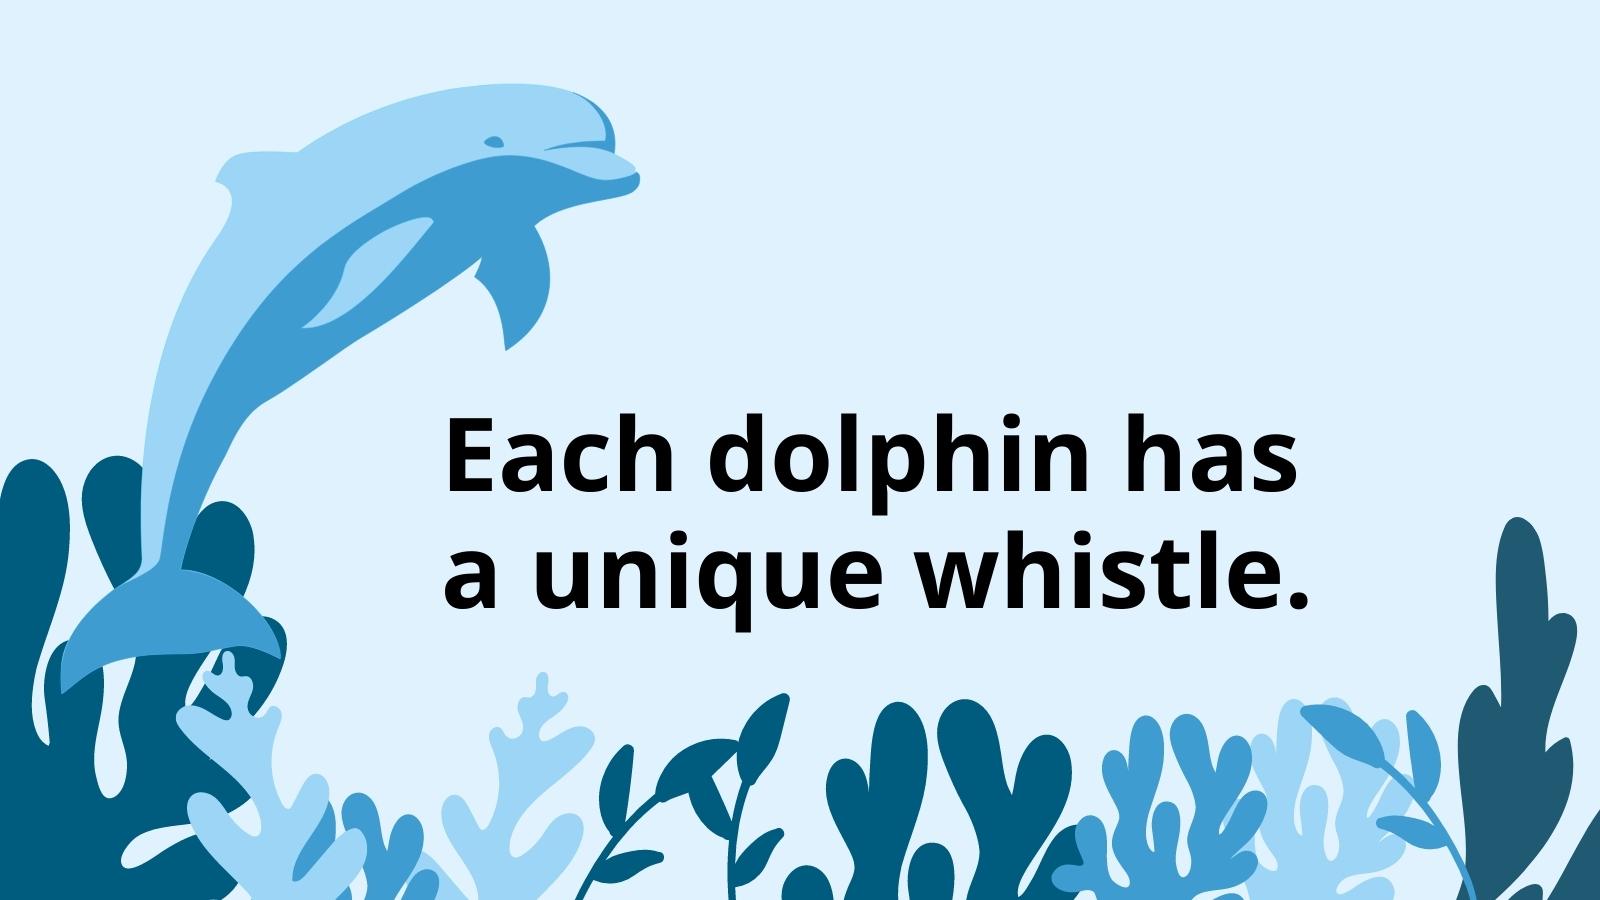  Delfinų faktai, kuriais vaikai gali dalytis klasėje